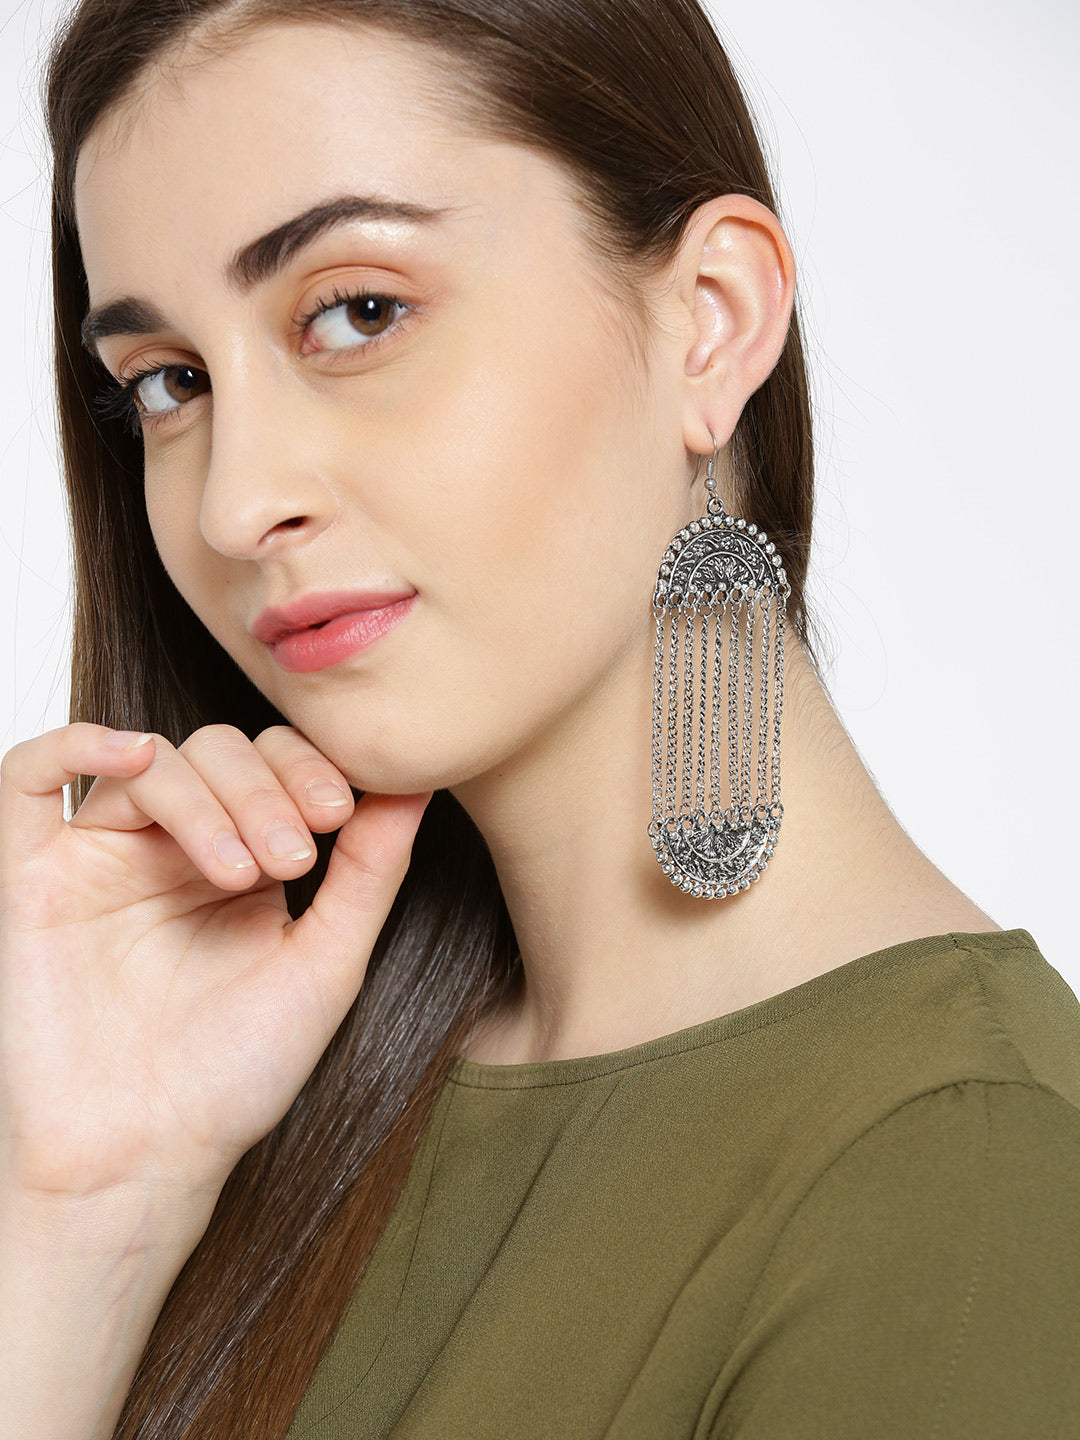 Designer Fancy German Silver Oxidized Tasselled Earrings For Women And Girls